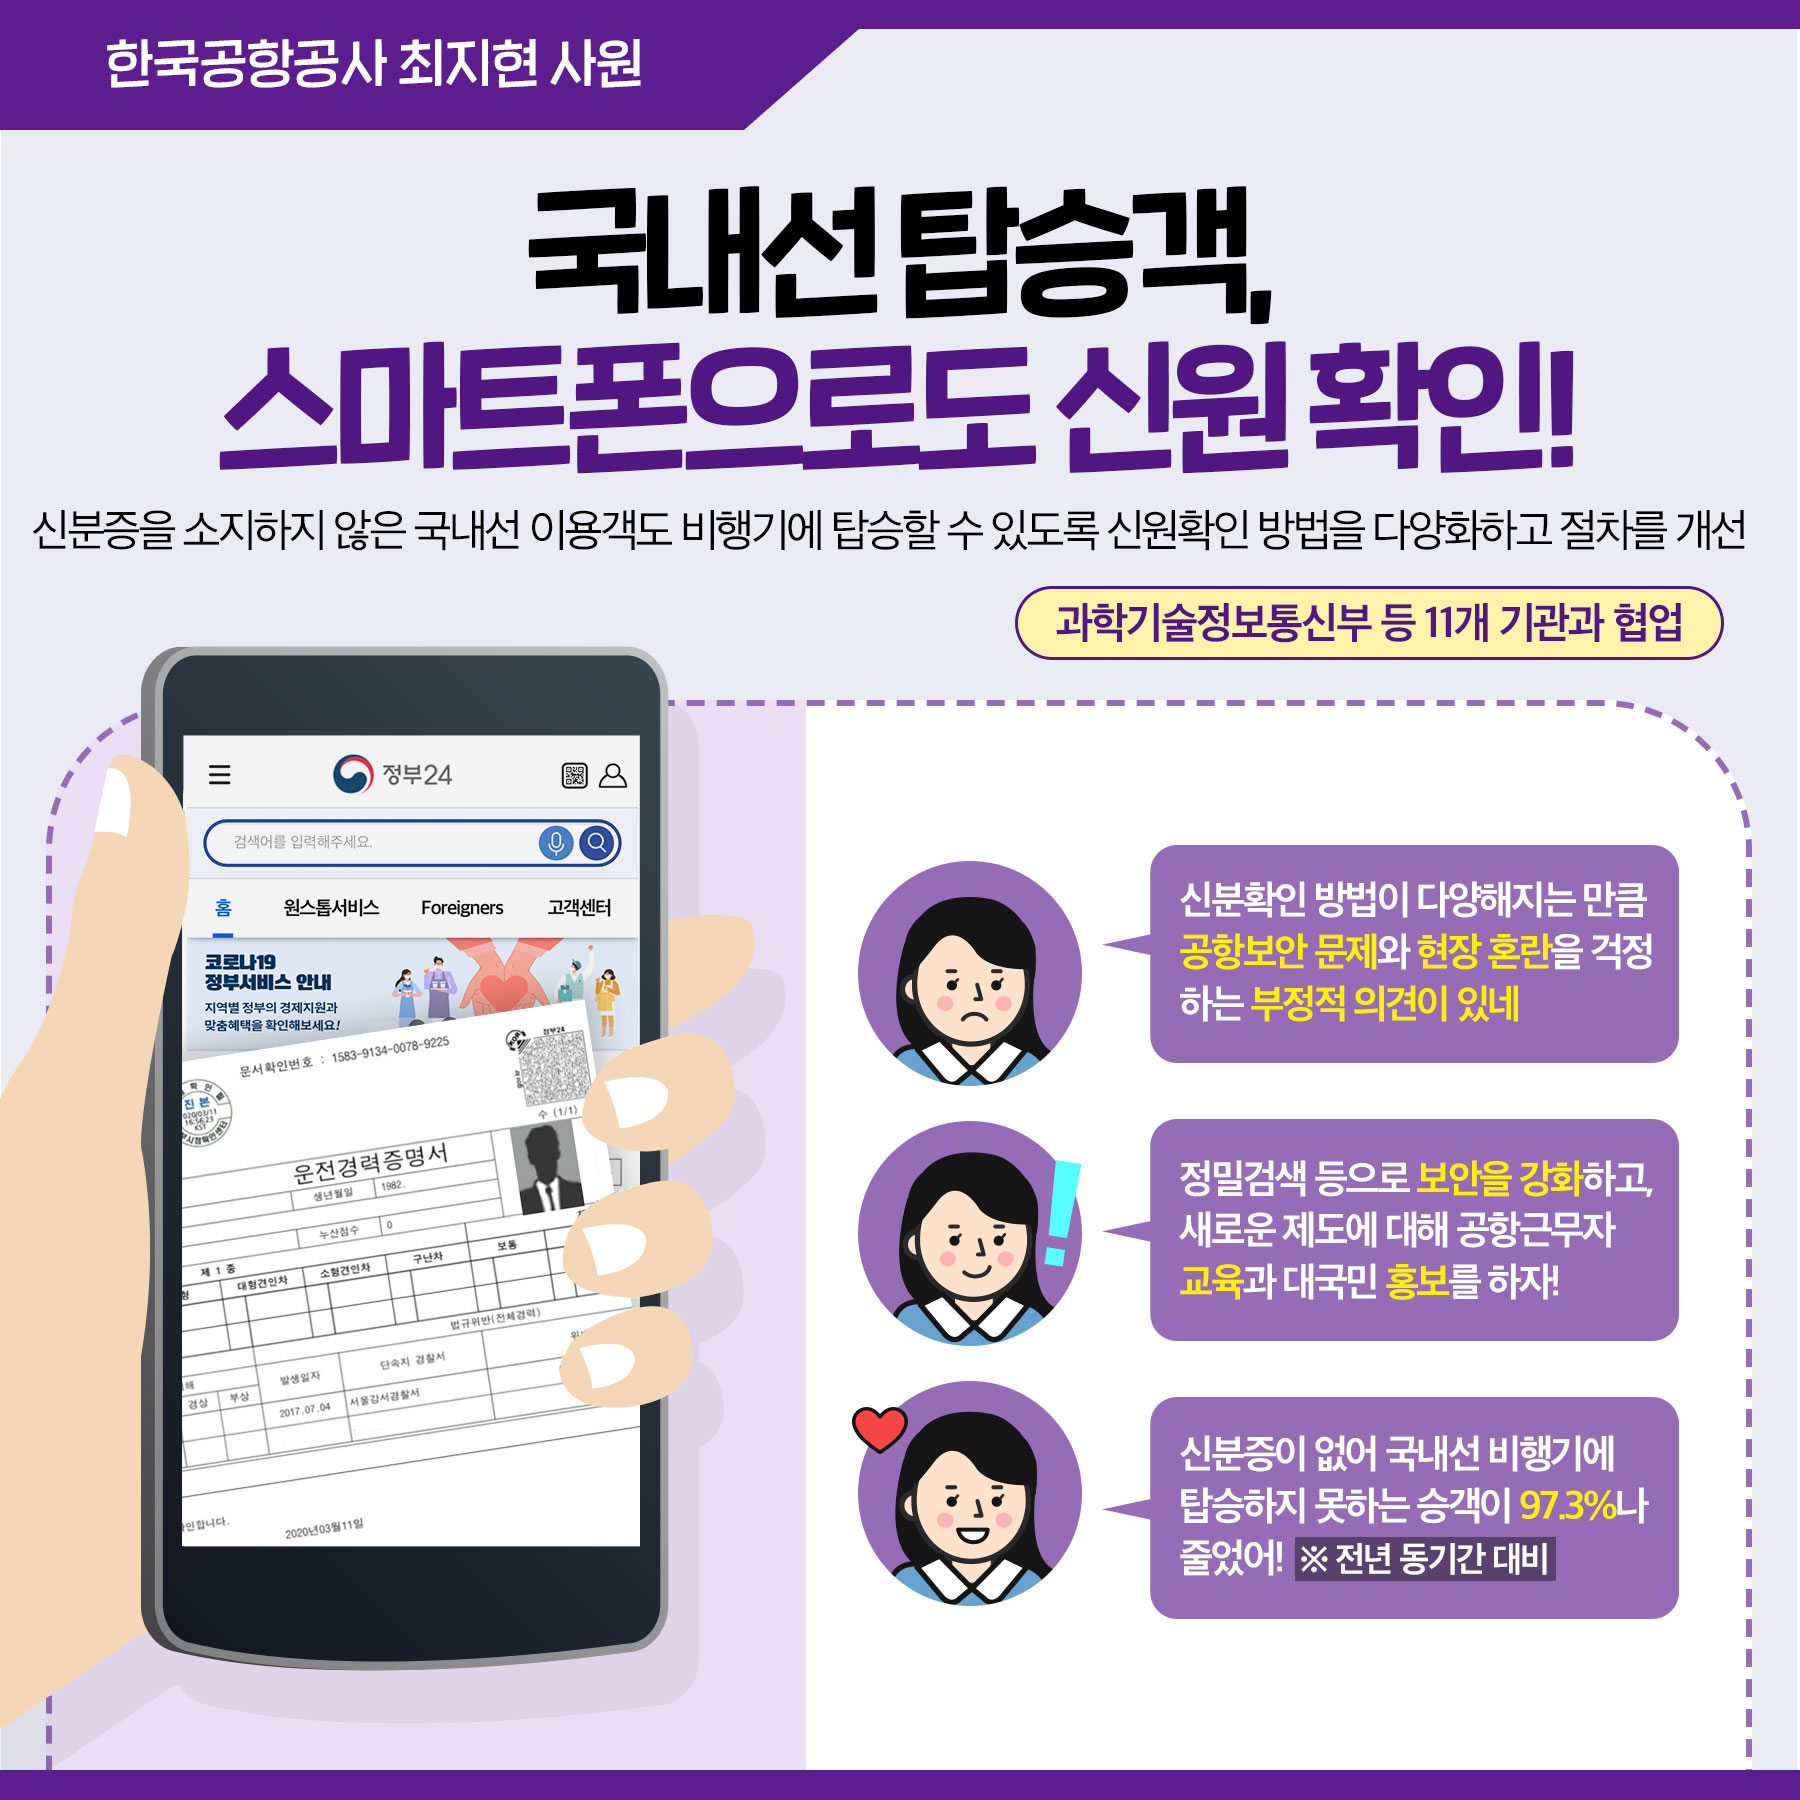  3. 한국공항공사 최지현 사원 국내선 탑승객, 스마트폰으로도 신원 확인! 신분증을 소지하지 않은 국내선 이용객도 비행기에 탑승할 수 있도록 신원확인 방법을 다양화하고 절차를 개선했습니다.